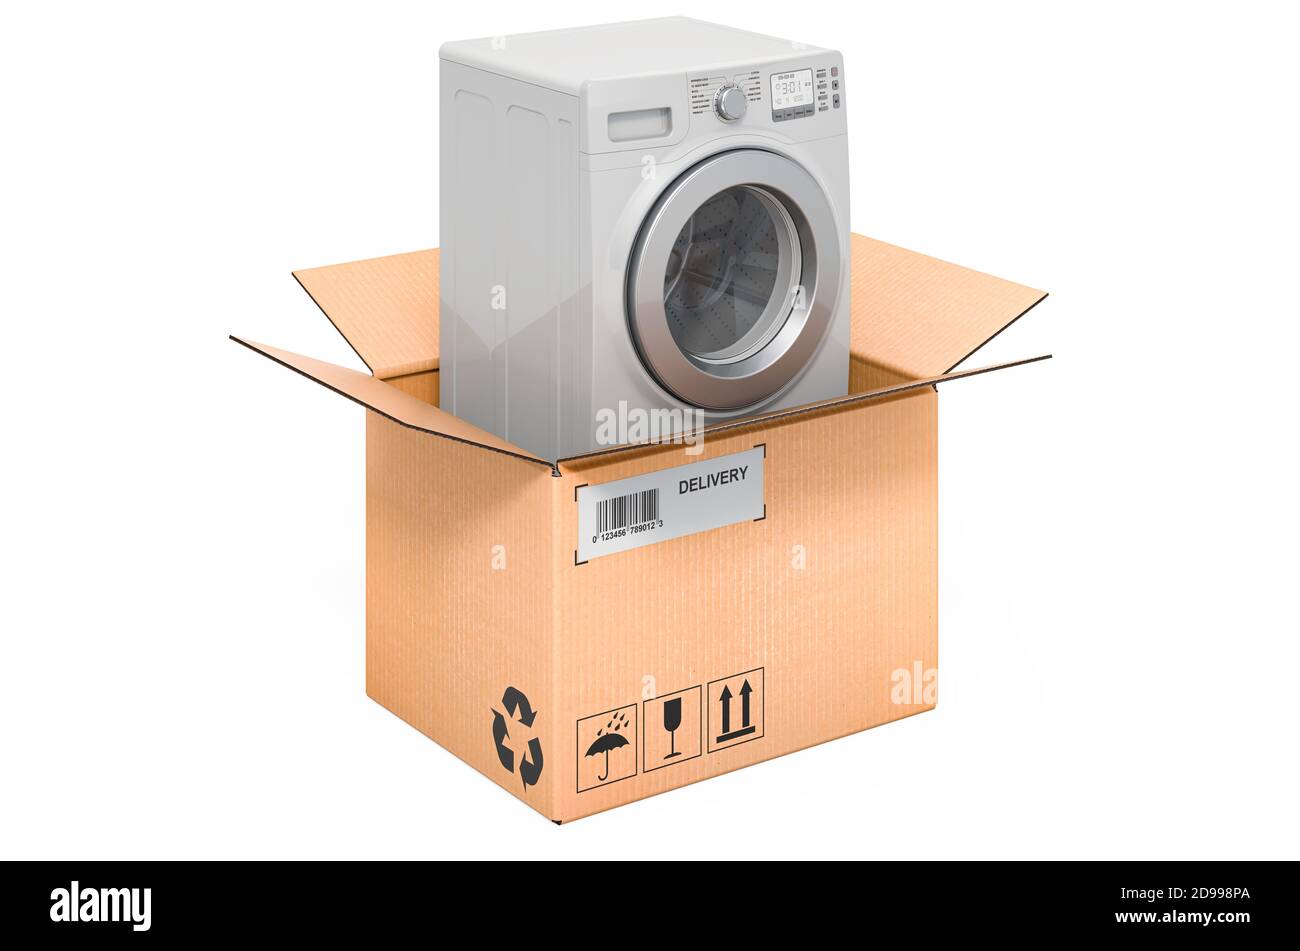 Machine à laver à l'intérieur de la boîte en carton, concept de livraison.  Rendu 3D isolé sur fond blanc Photo Stock - Alamy